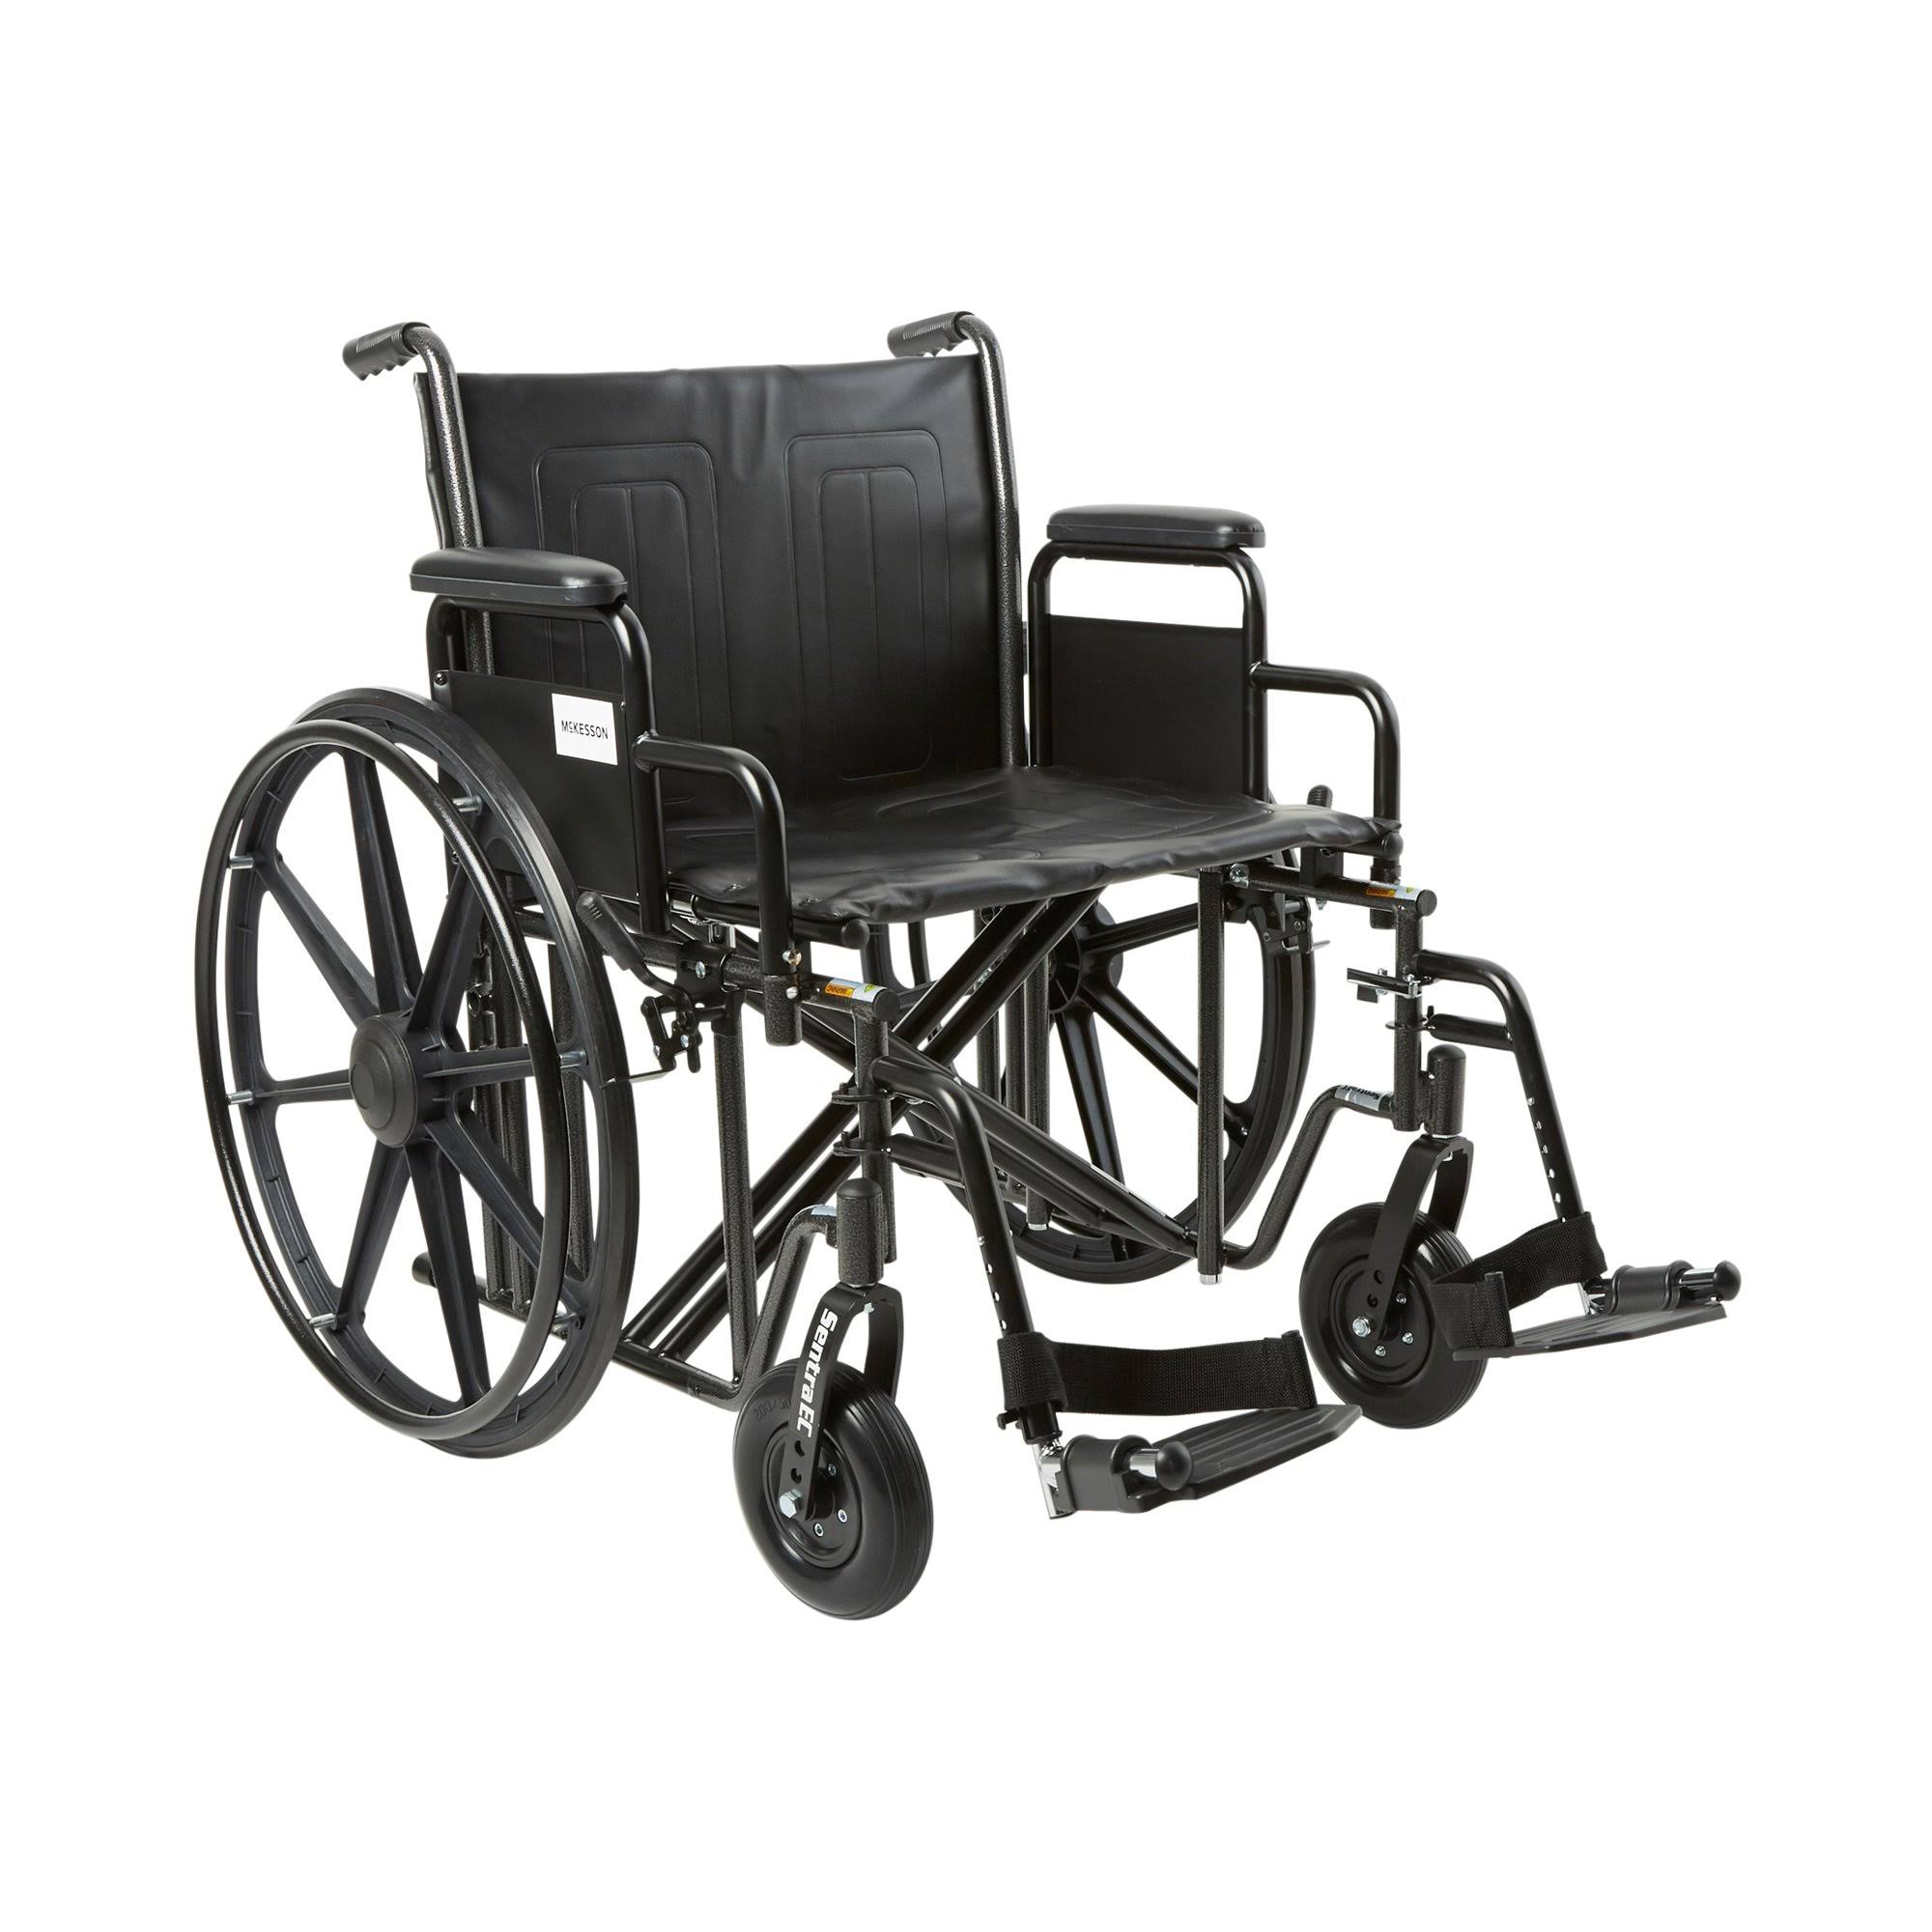 McKesson Drive Wheelchair - Black, 22", 450lbs